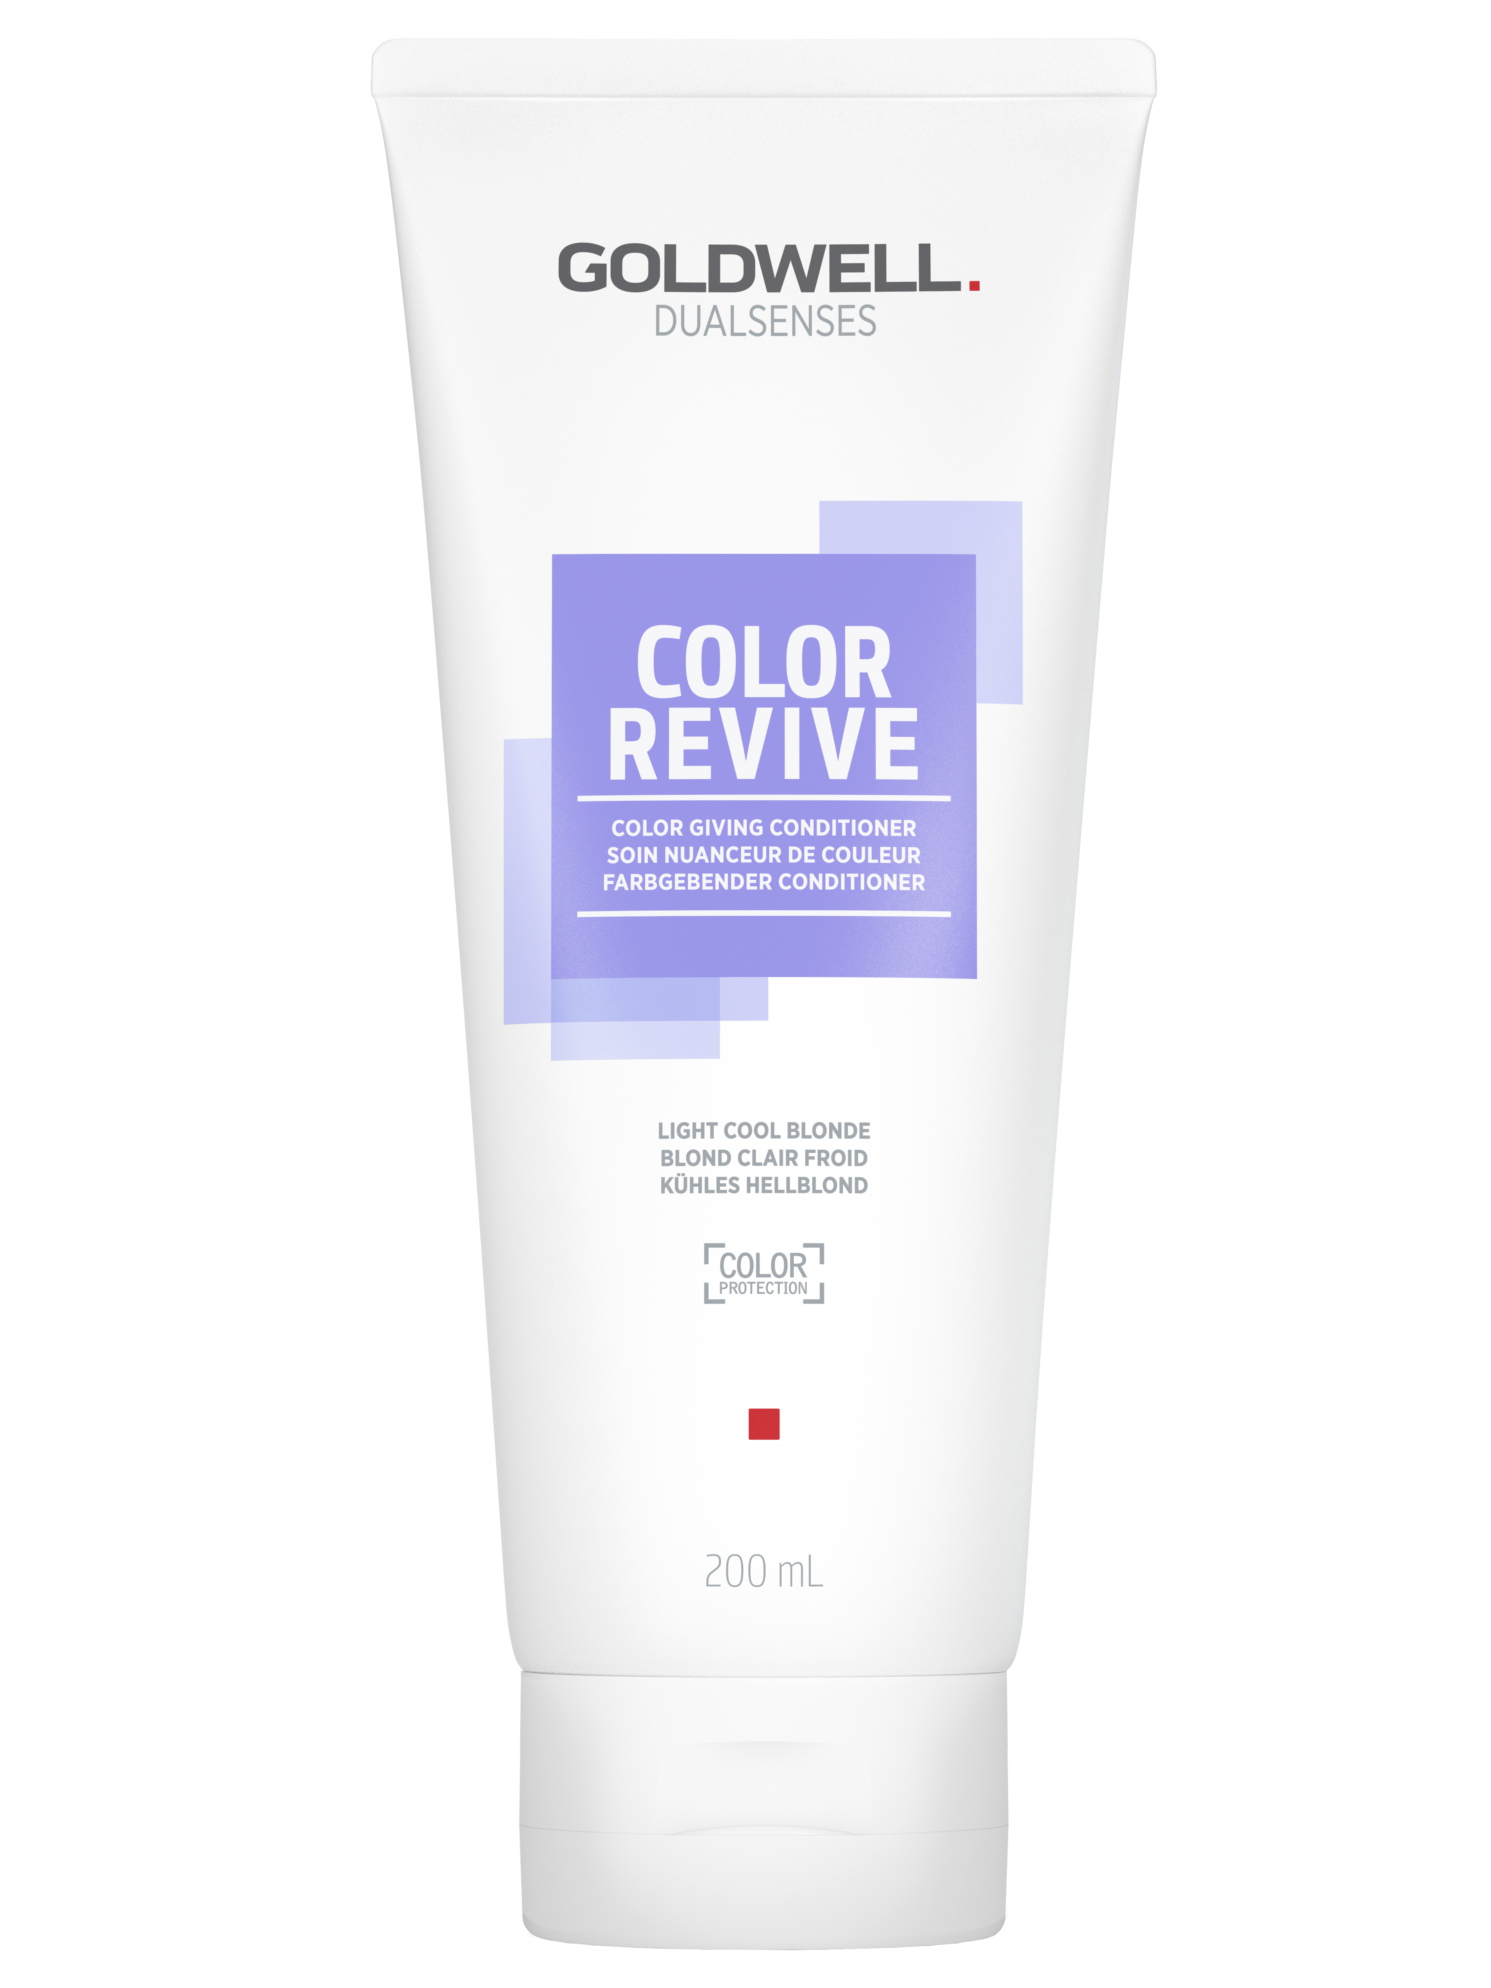 Kondicionér pro oživení barvy vlasů Goldwell Color Revive - 200 ml, světlá studená blond (205624) + DÁREK ZDARMA